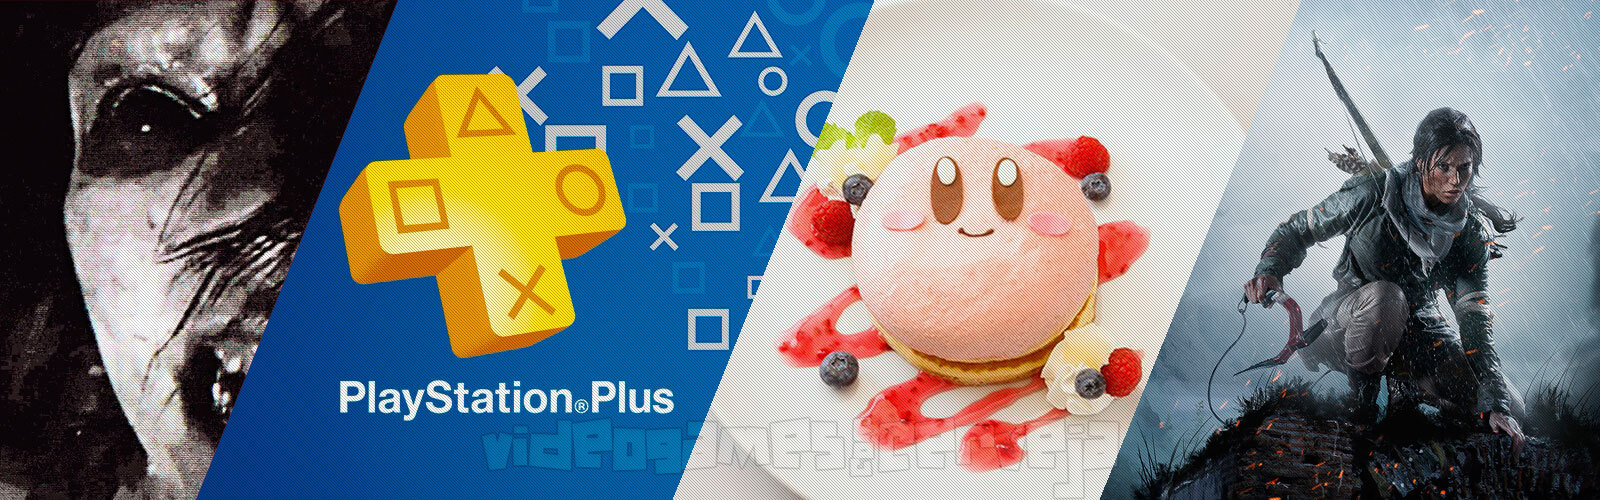 Resumo da Semana - PlayStation Plus mais cara, Restaurante Nintendo, Games with Gold e mais.. Cover